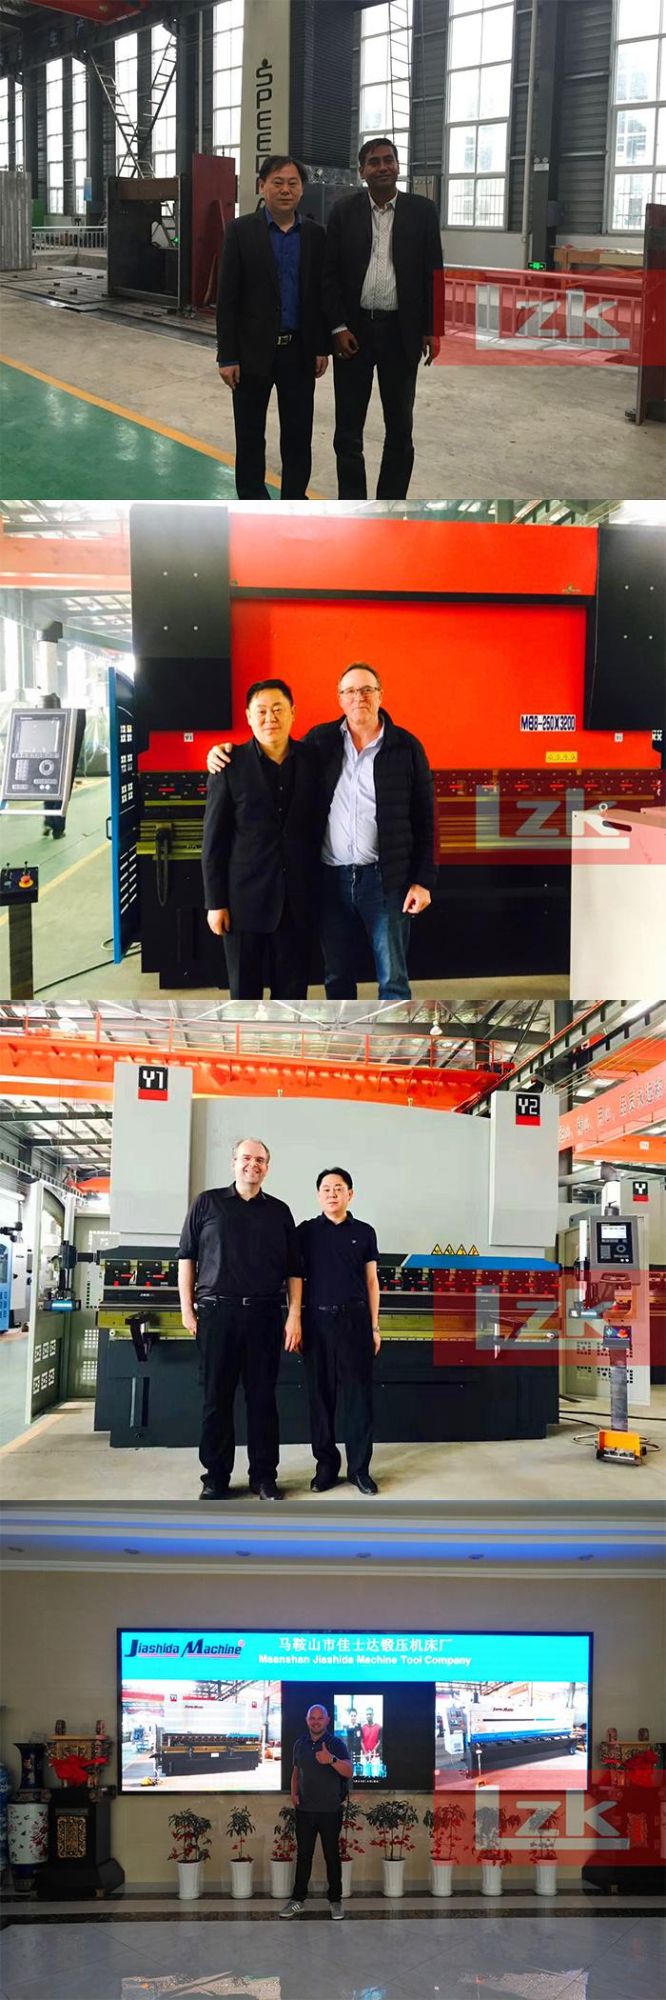 China Hydraulic CNC Sheet Metal Folding Machine Factory